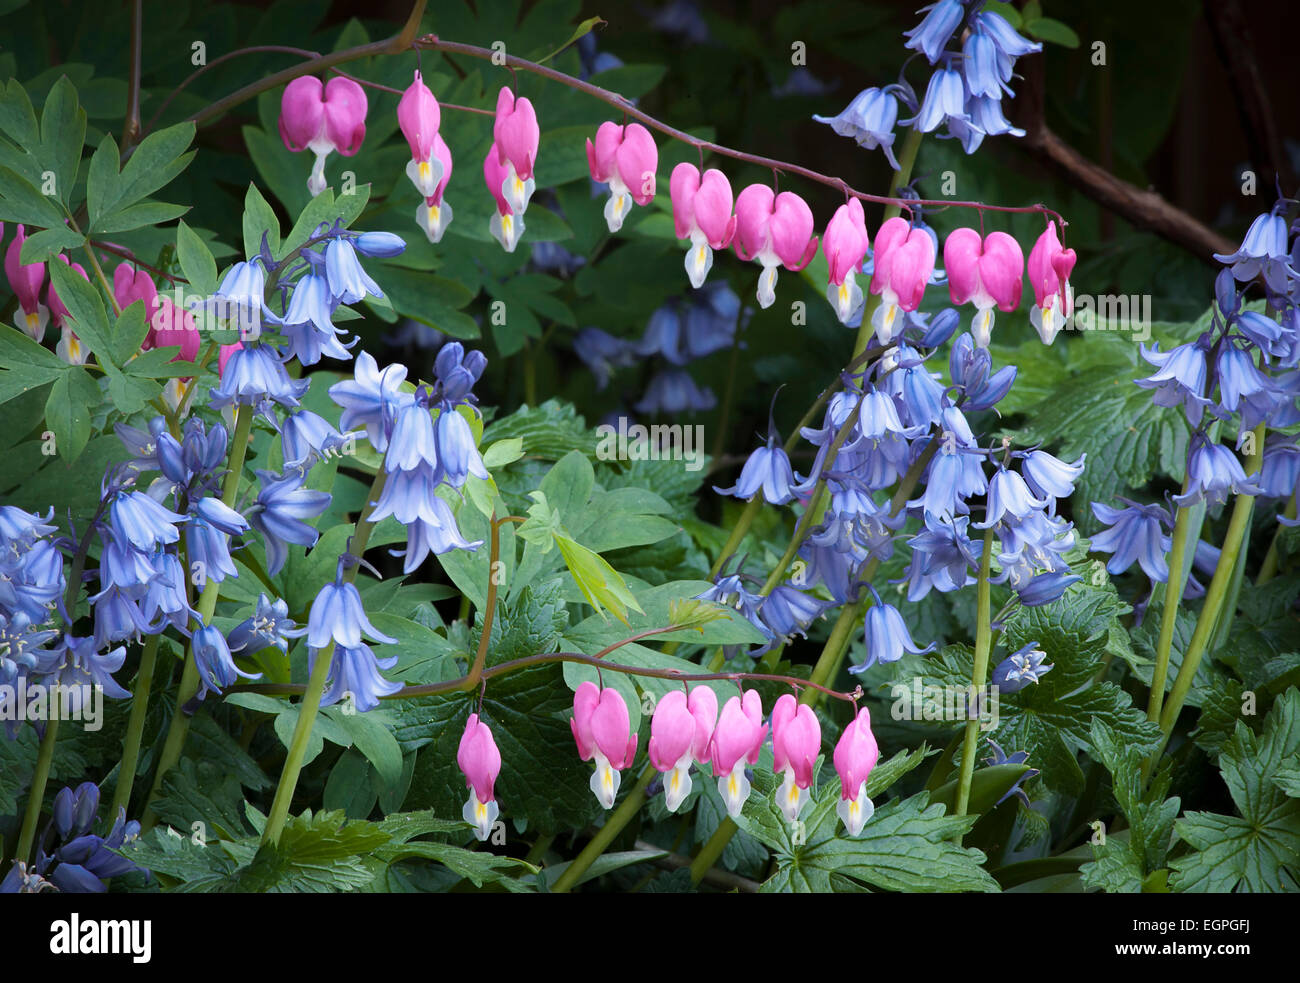 Blutungen, Herz, Lamprocapnos Spectabilis, zwei Stämme des Herzens geformte Blüten hängen anmutig über mehrere Stämme des spanischen Bluebell Blumen, Hyacinthoides Hispanica, beide sind Schatten Pflanzen. Stockfoto